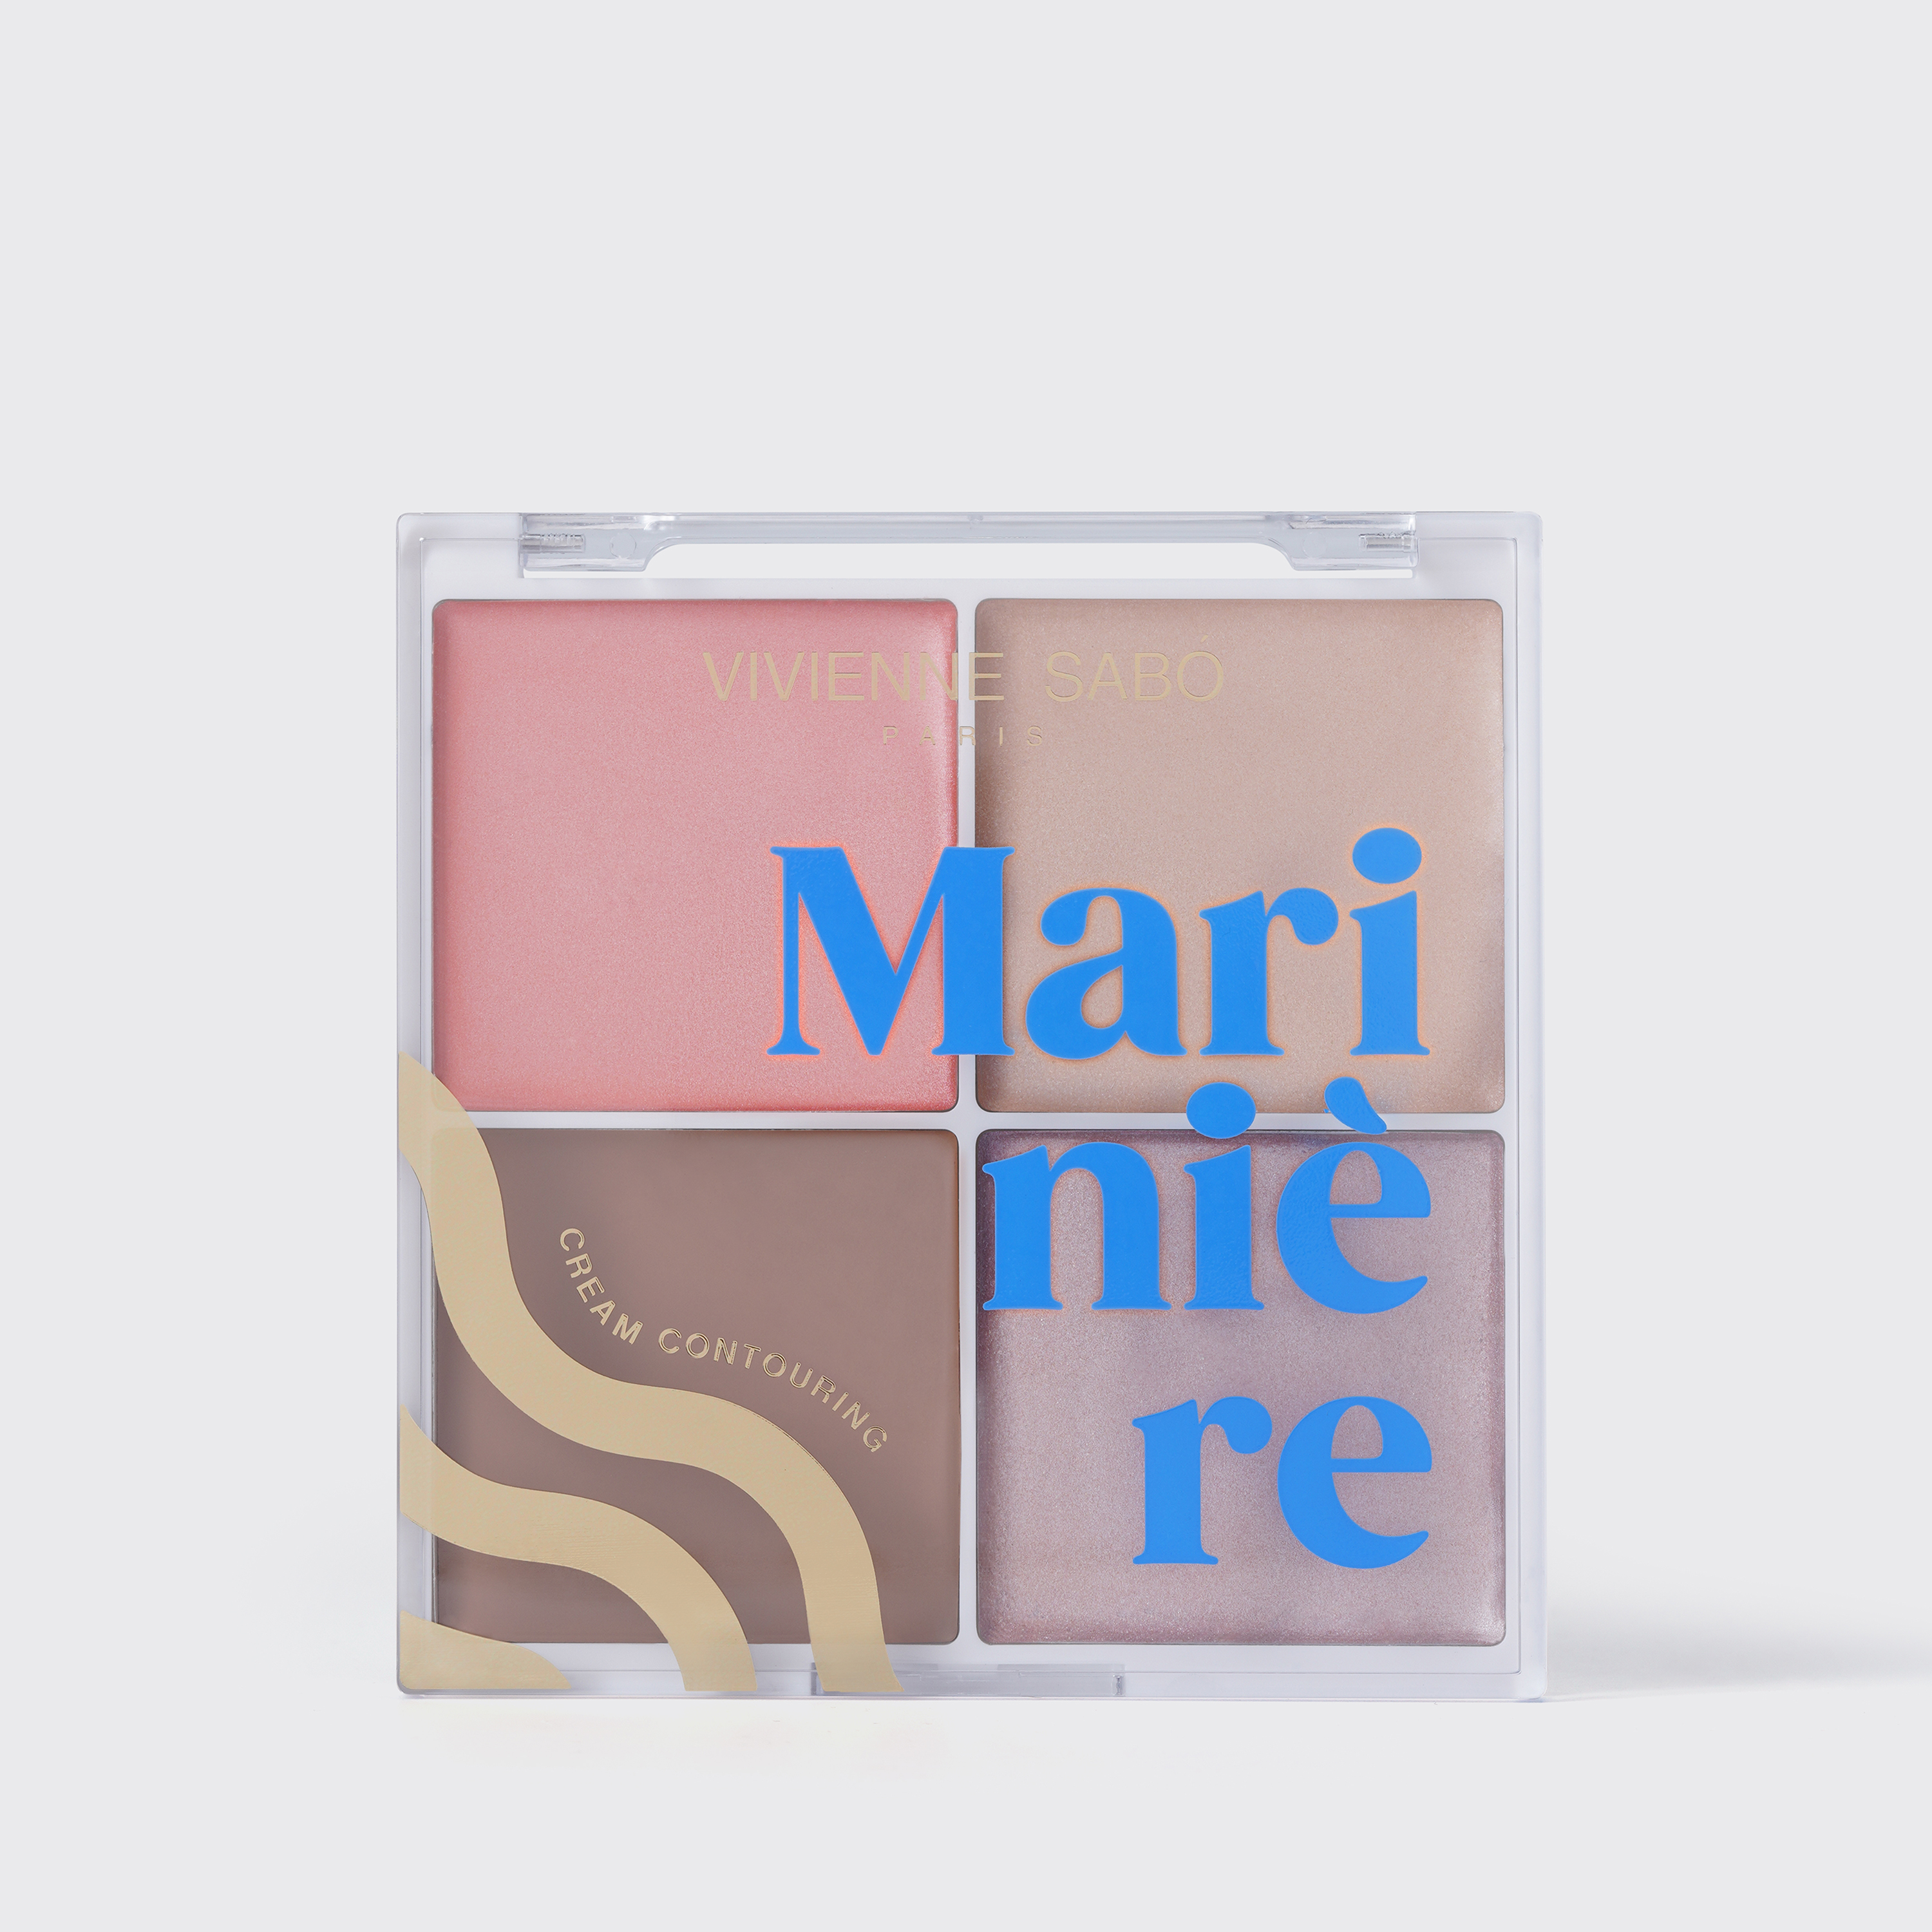 Vivienne Sabo - Cream  Face Contouring Palette - MARINIÈRE 01